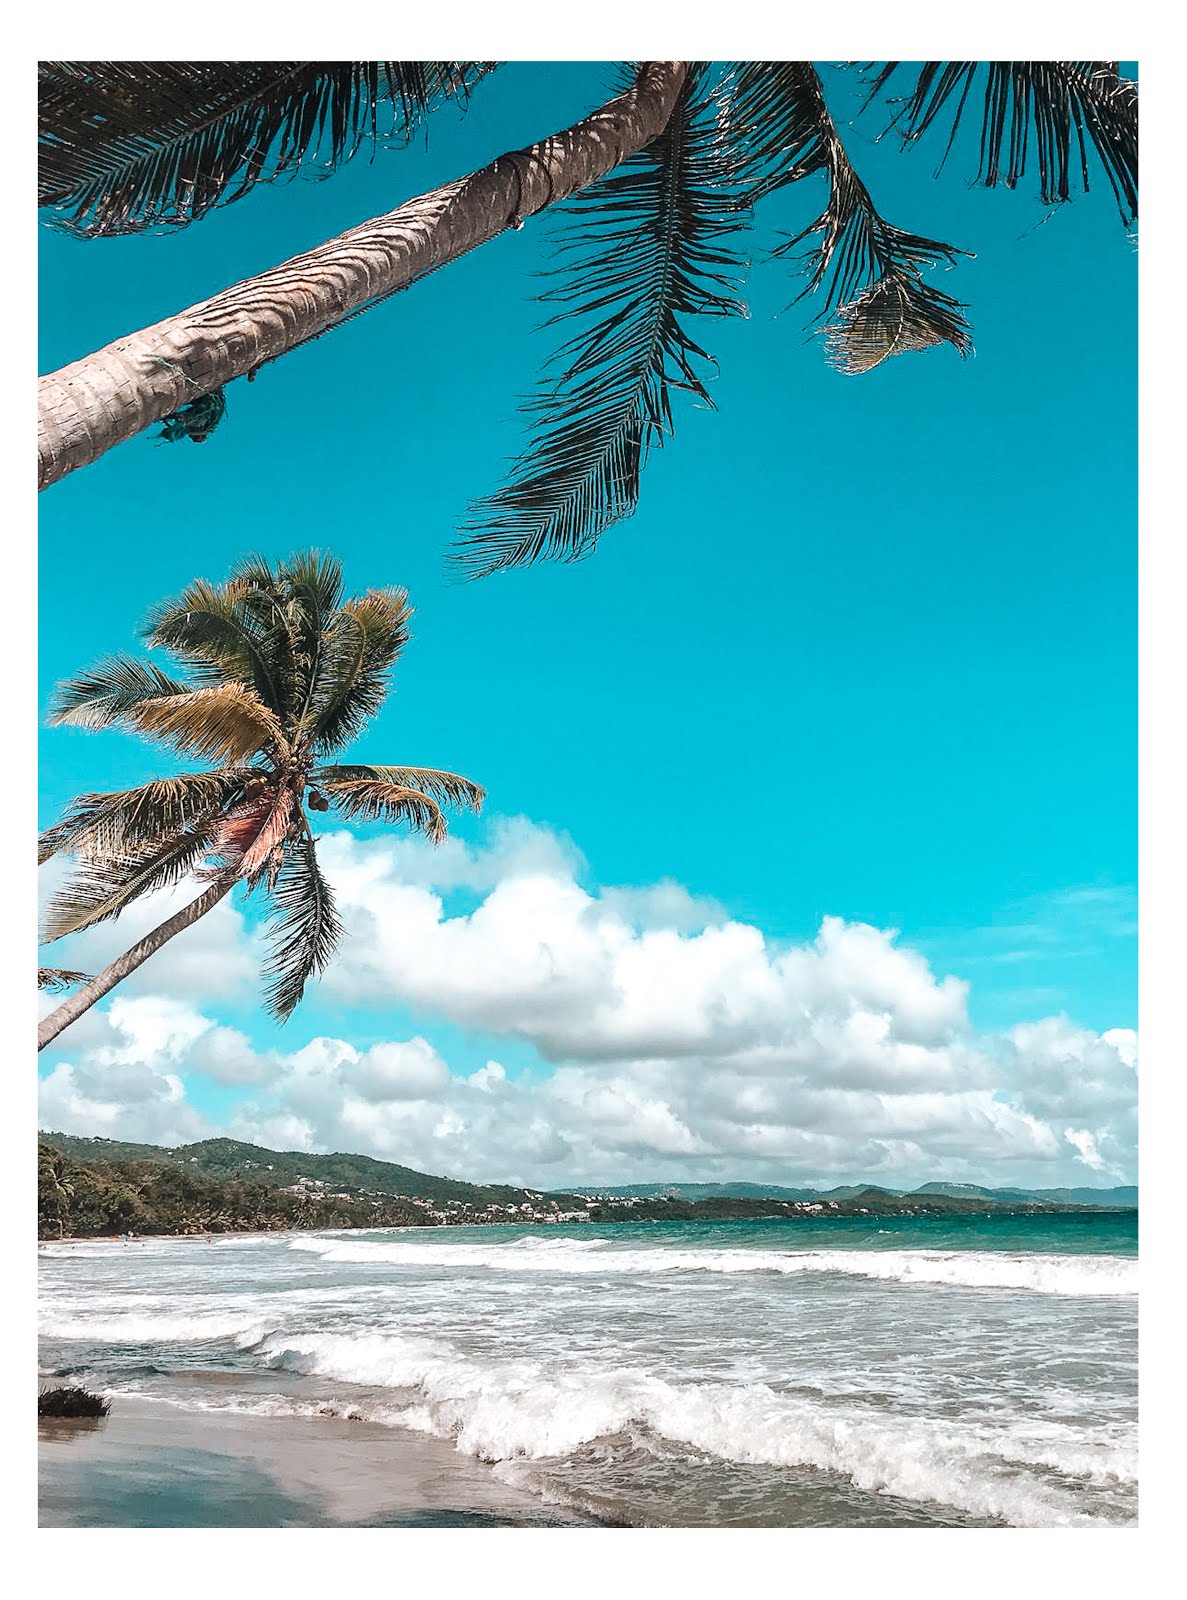 palmiers au premier plan et plage et commune du diamant et son eau turquoise au second plan